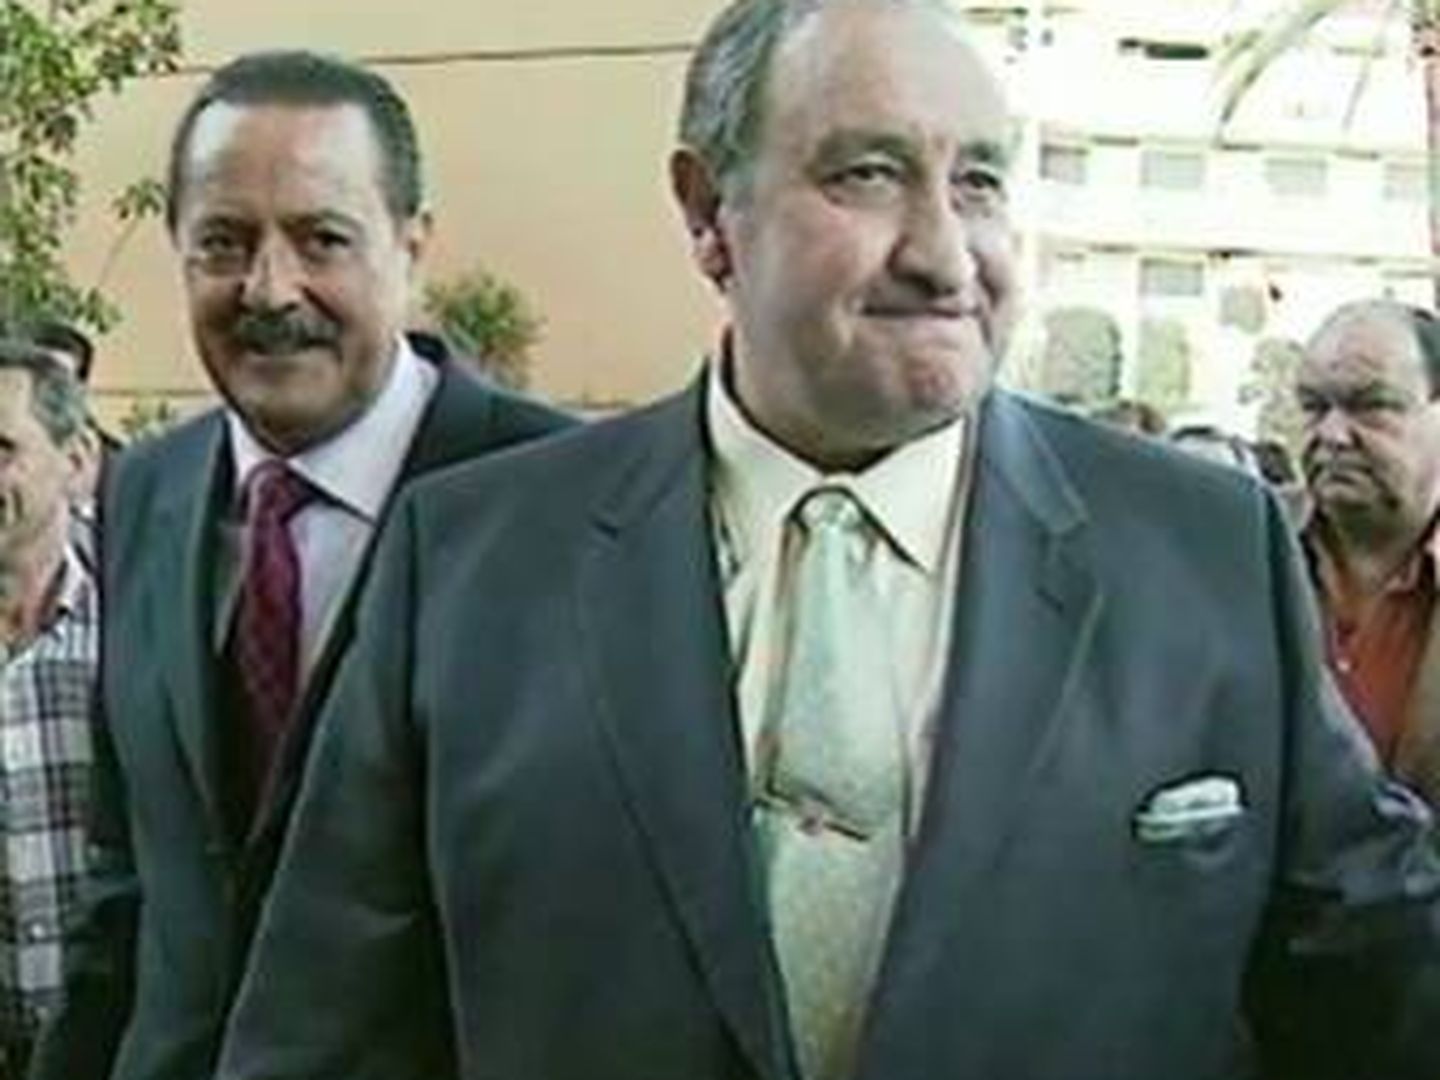  Julián Muñoz (izquierda) junto a su antecesor y mentor, Jesús Gil. 